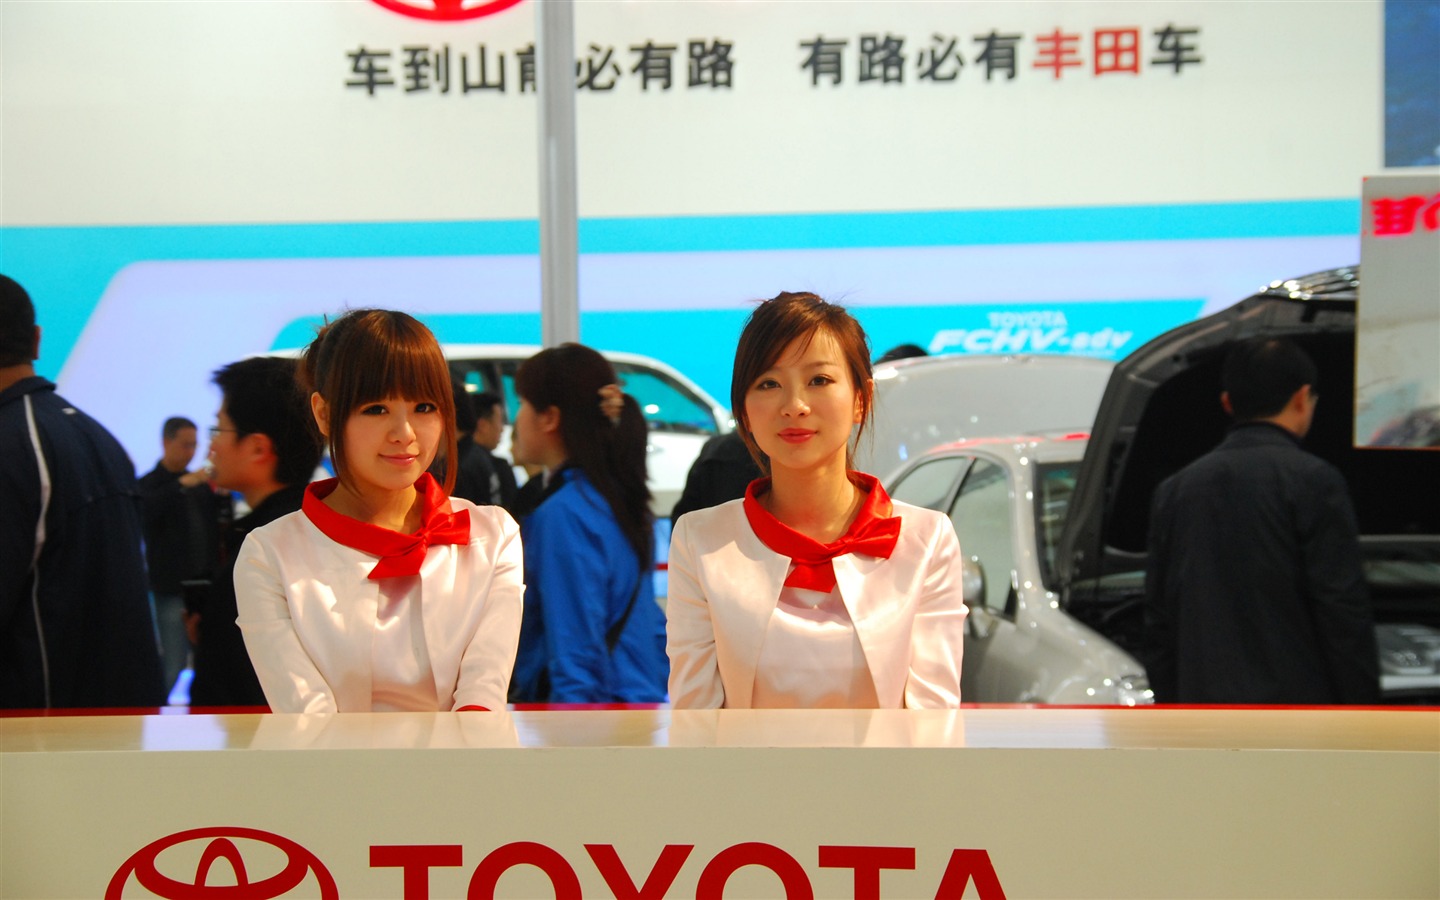 2010 v Pekingu mezinárodní automobilové výstavy (3) (z321x123 práce) #25 - 1440x900